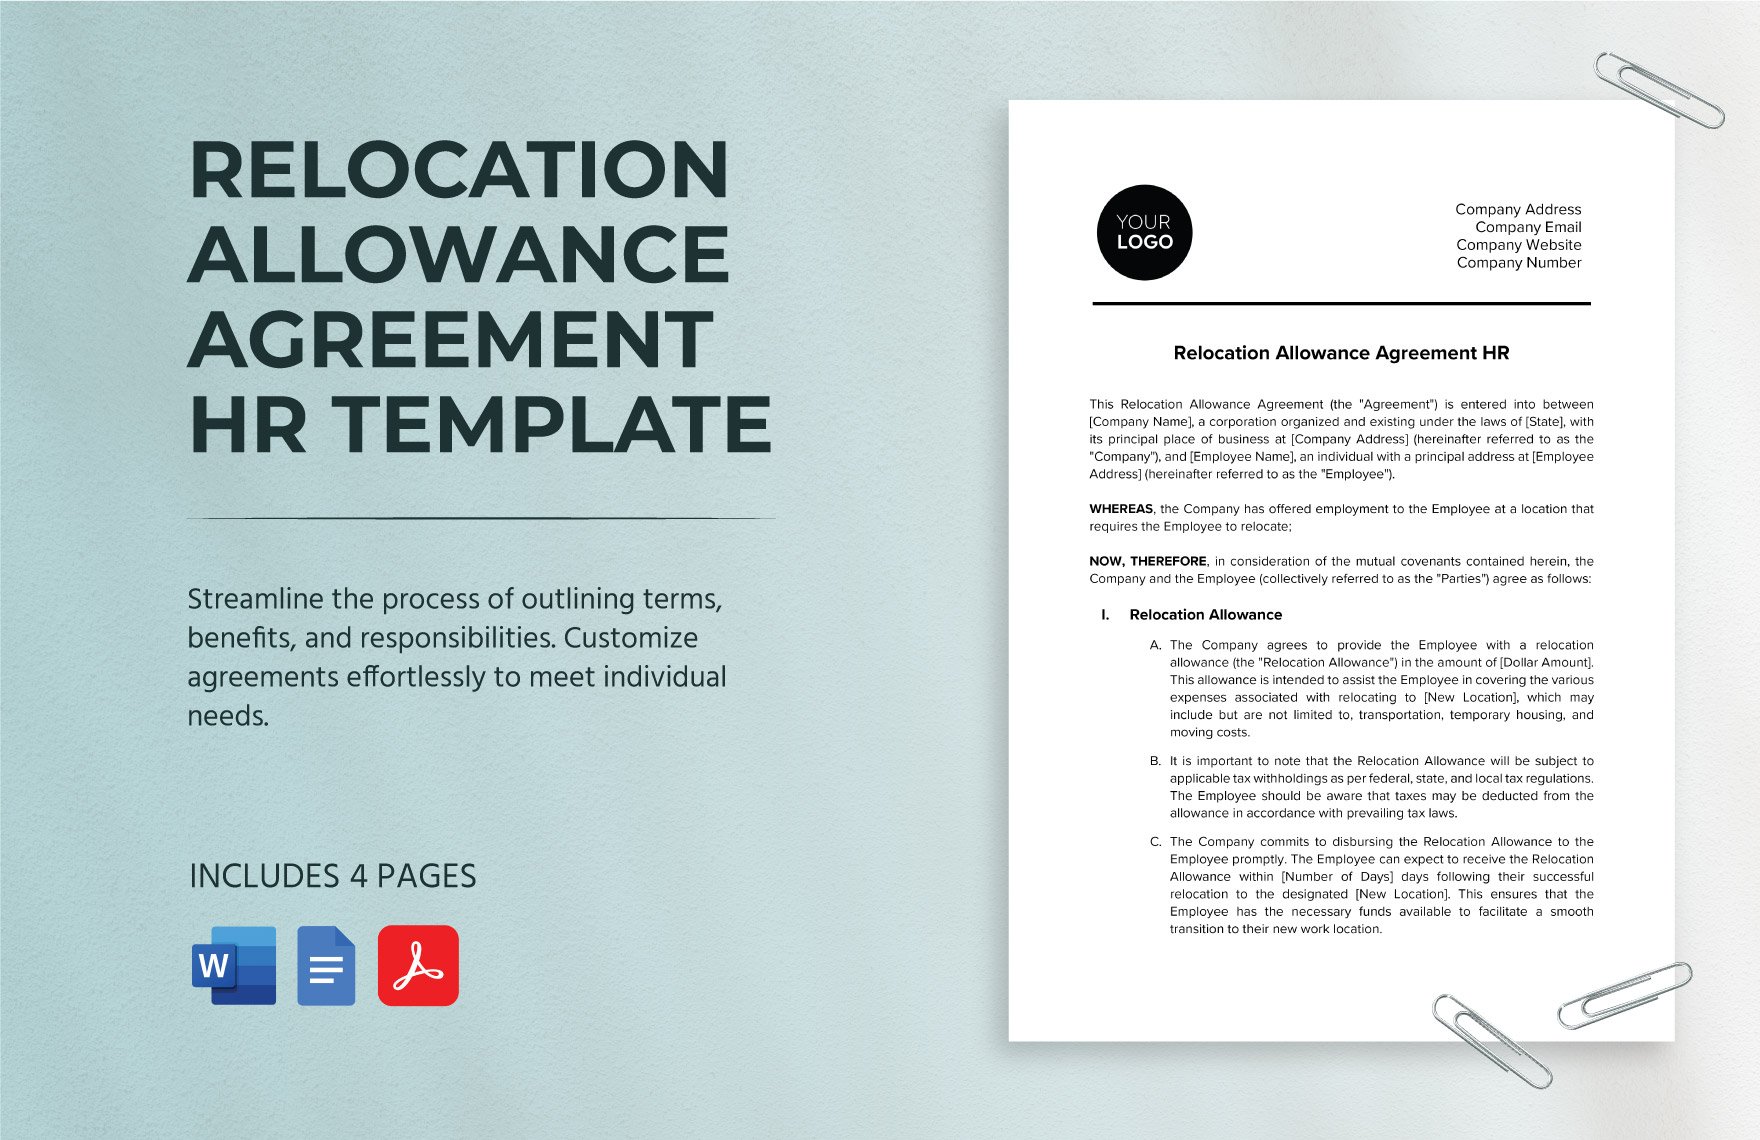 Relocation Allowance Agreement HR Template